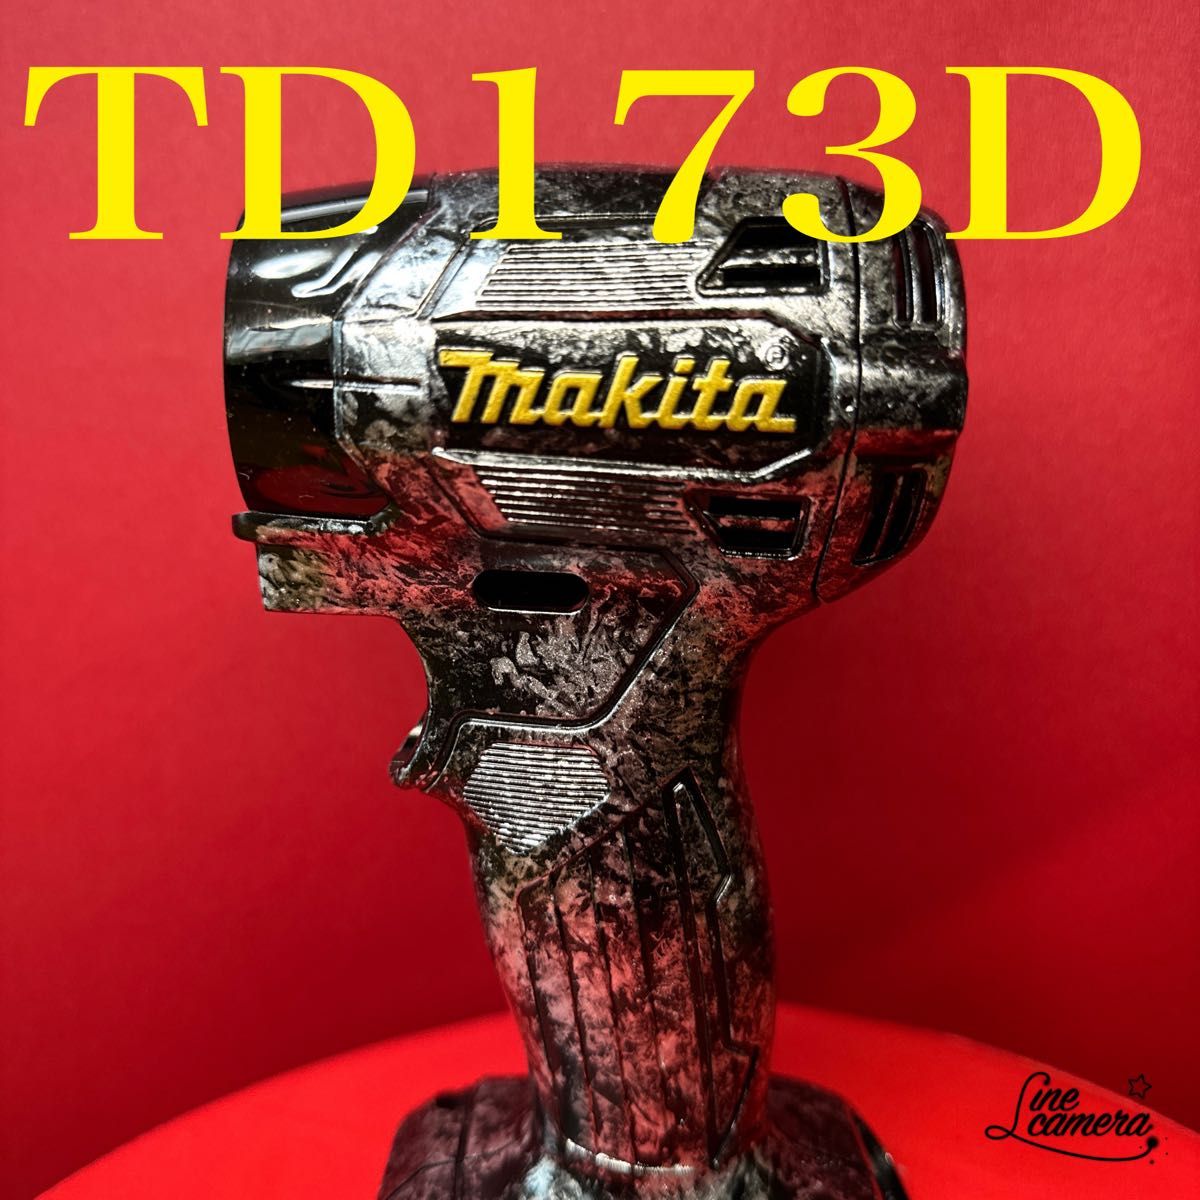 最新型マキタインパクトドライバーハウジング TD173Dカスタム仕様